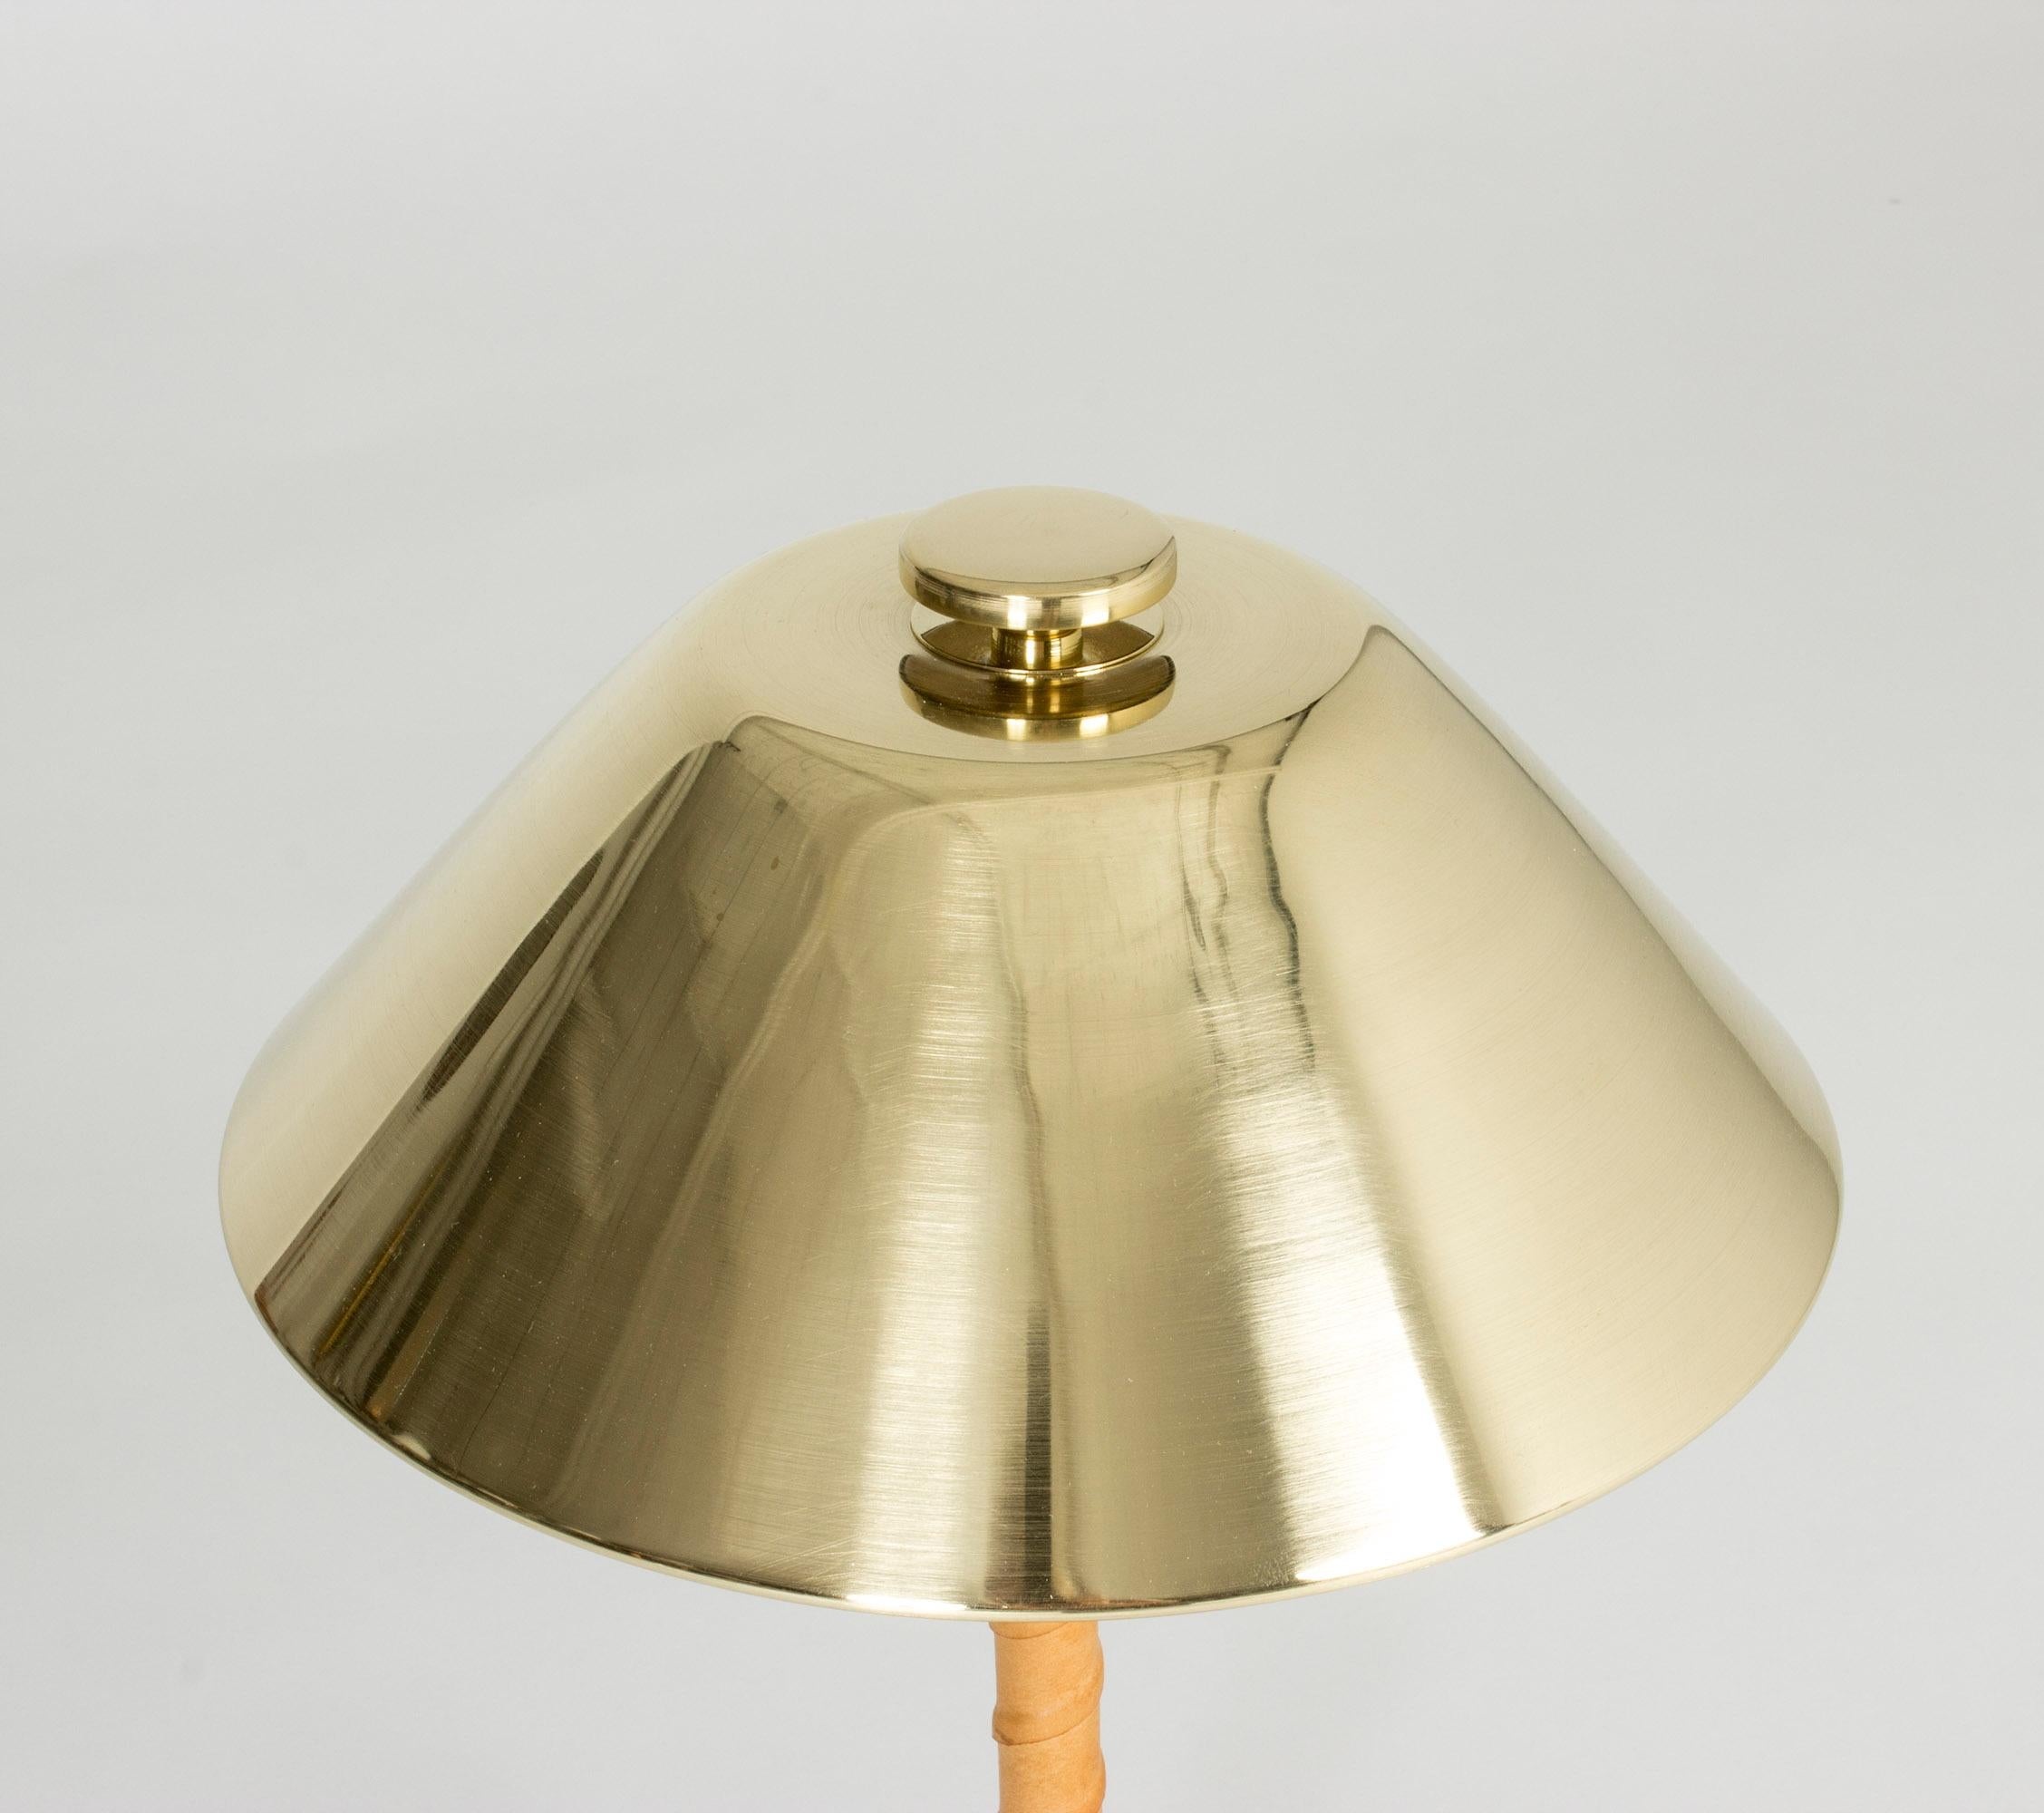 Scandinavian Modern Brass and Leather Table Lamp by Einar Bäckström